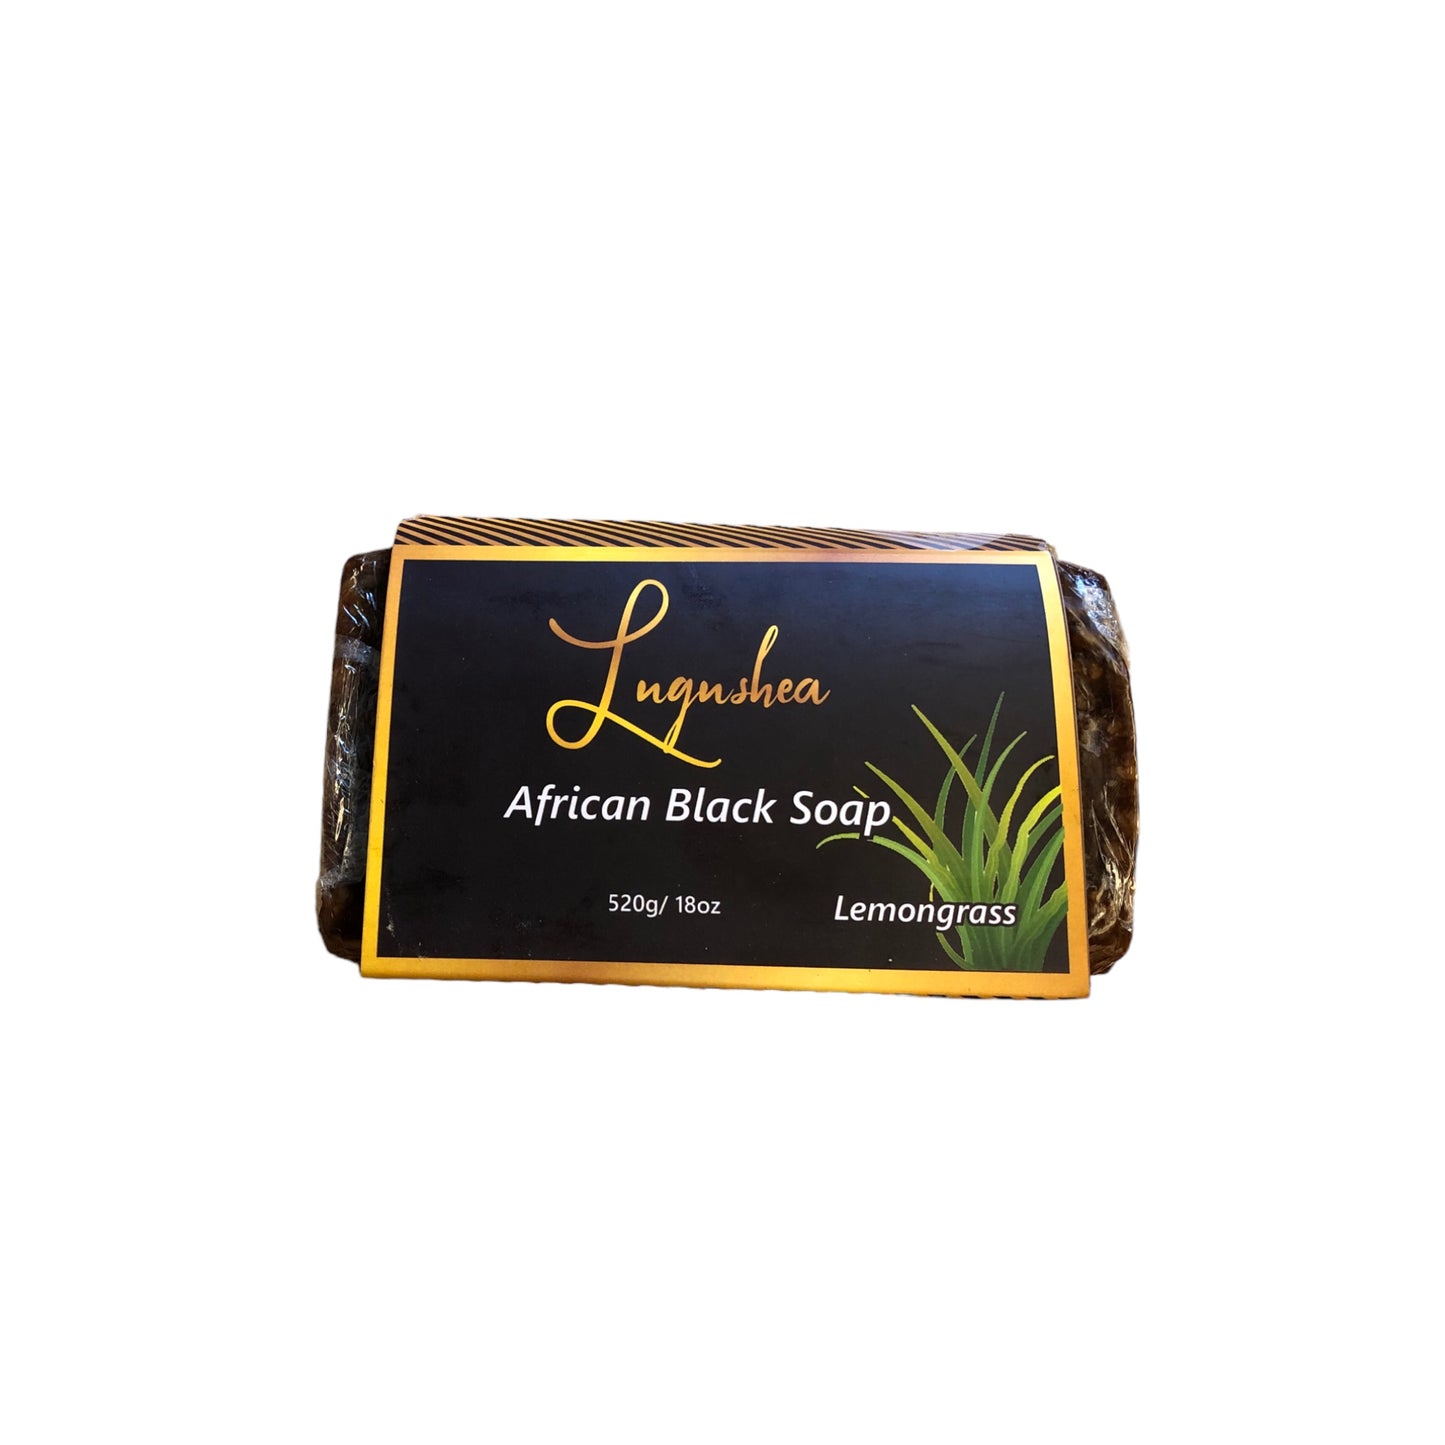 Lemongrass African Black Soap 520g